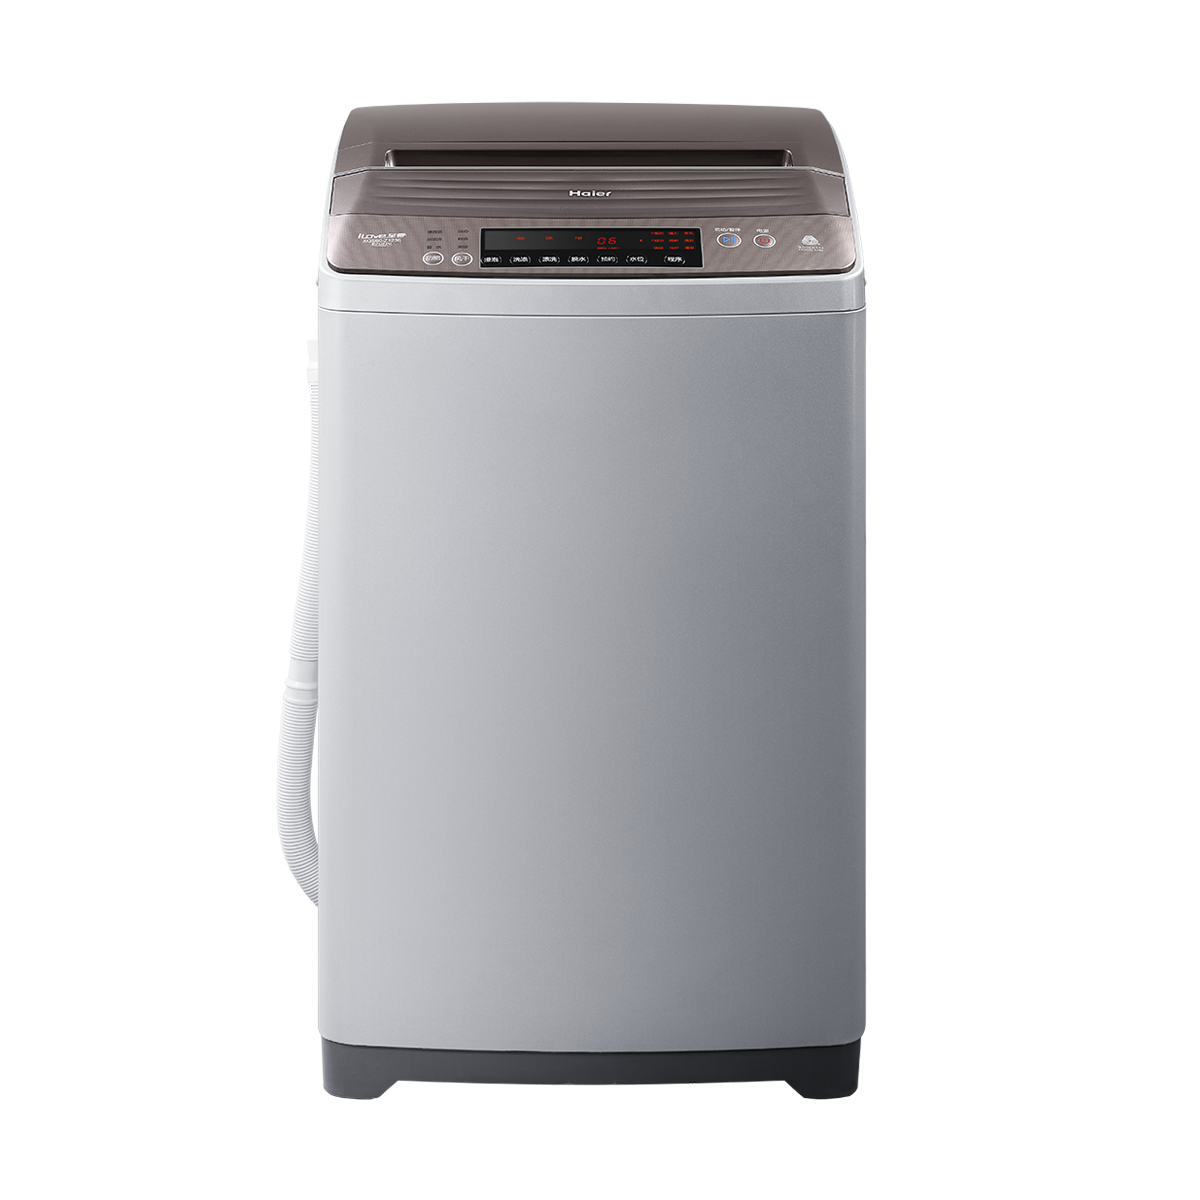 海尔Haier洗衣机 XQS60-Z1236 说明书